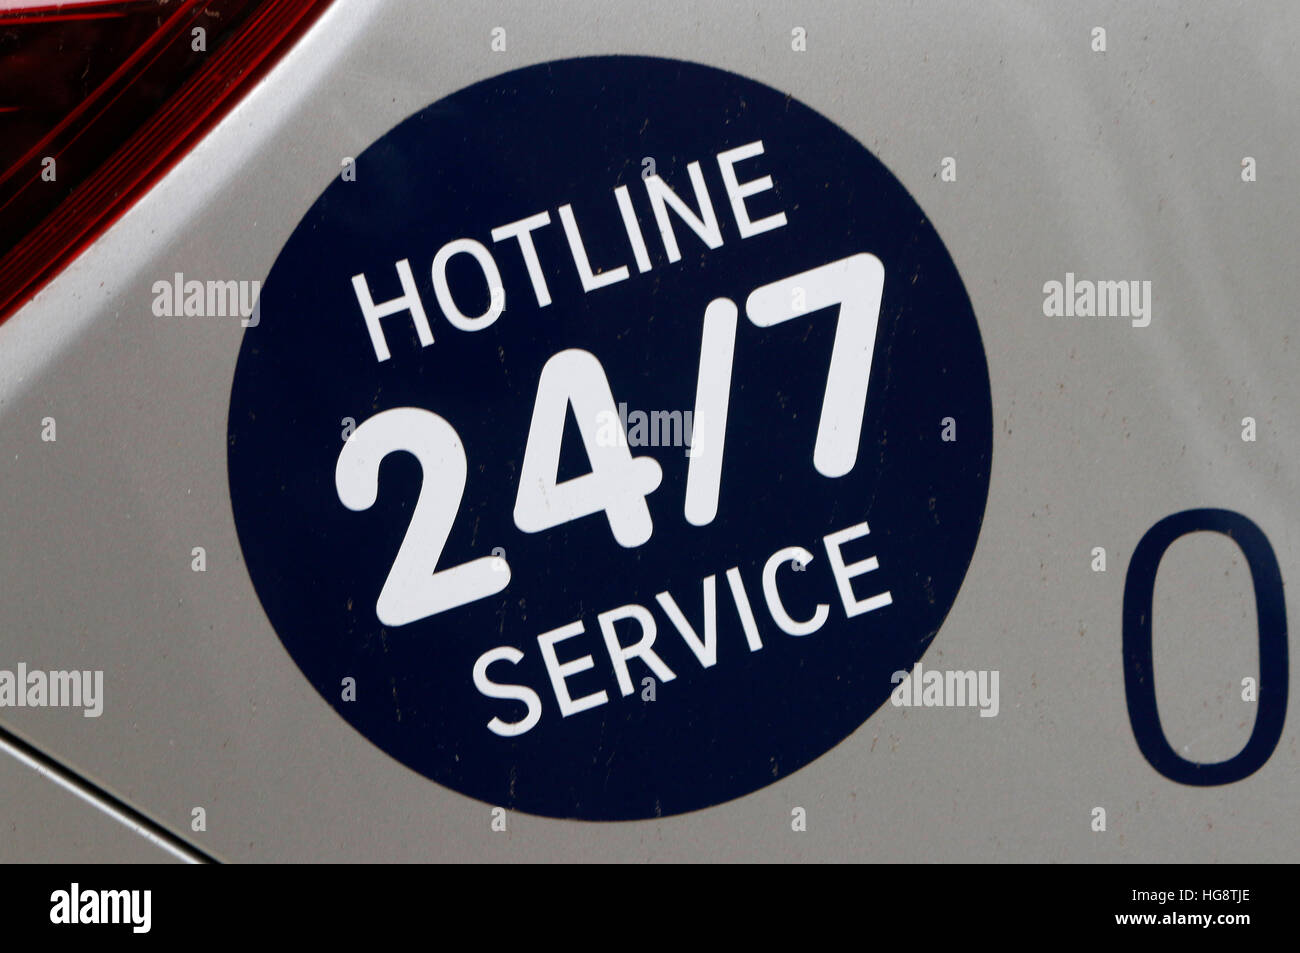 das Logo der Marke 'Hotline 24/7 Service', Berlin. Stock Photo